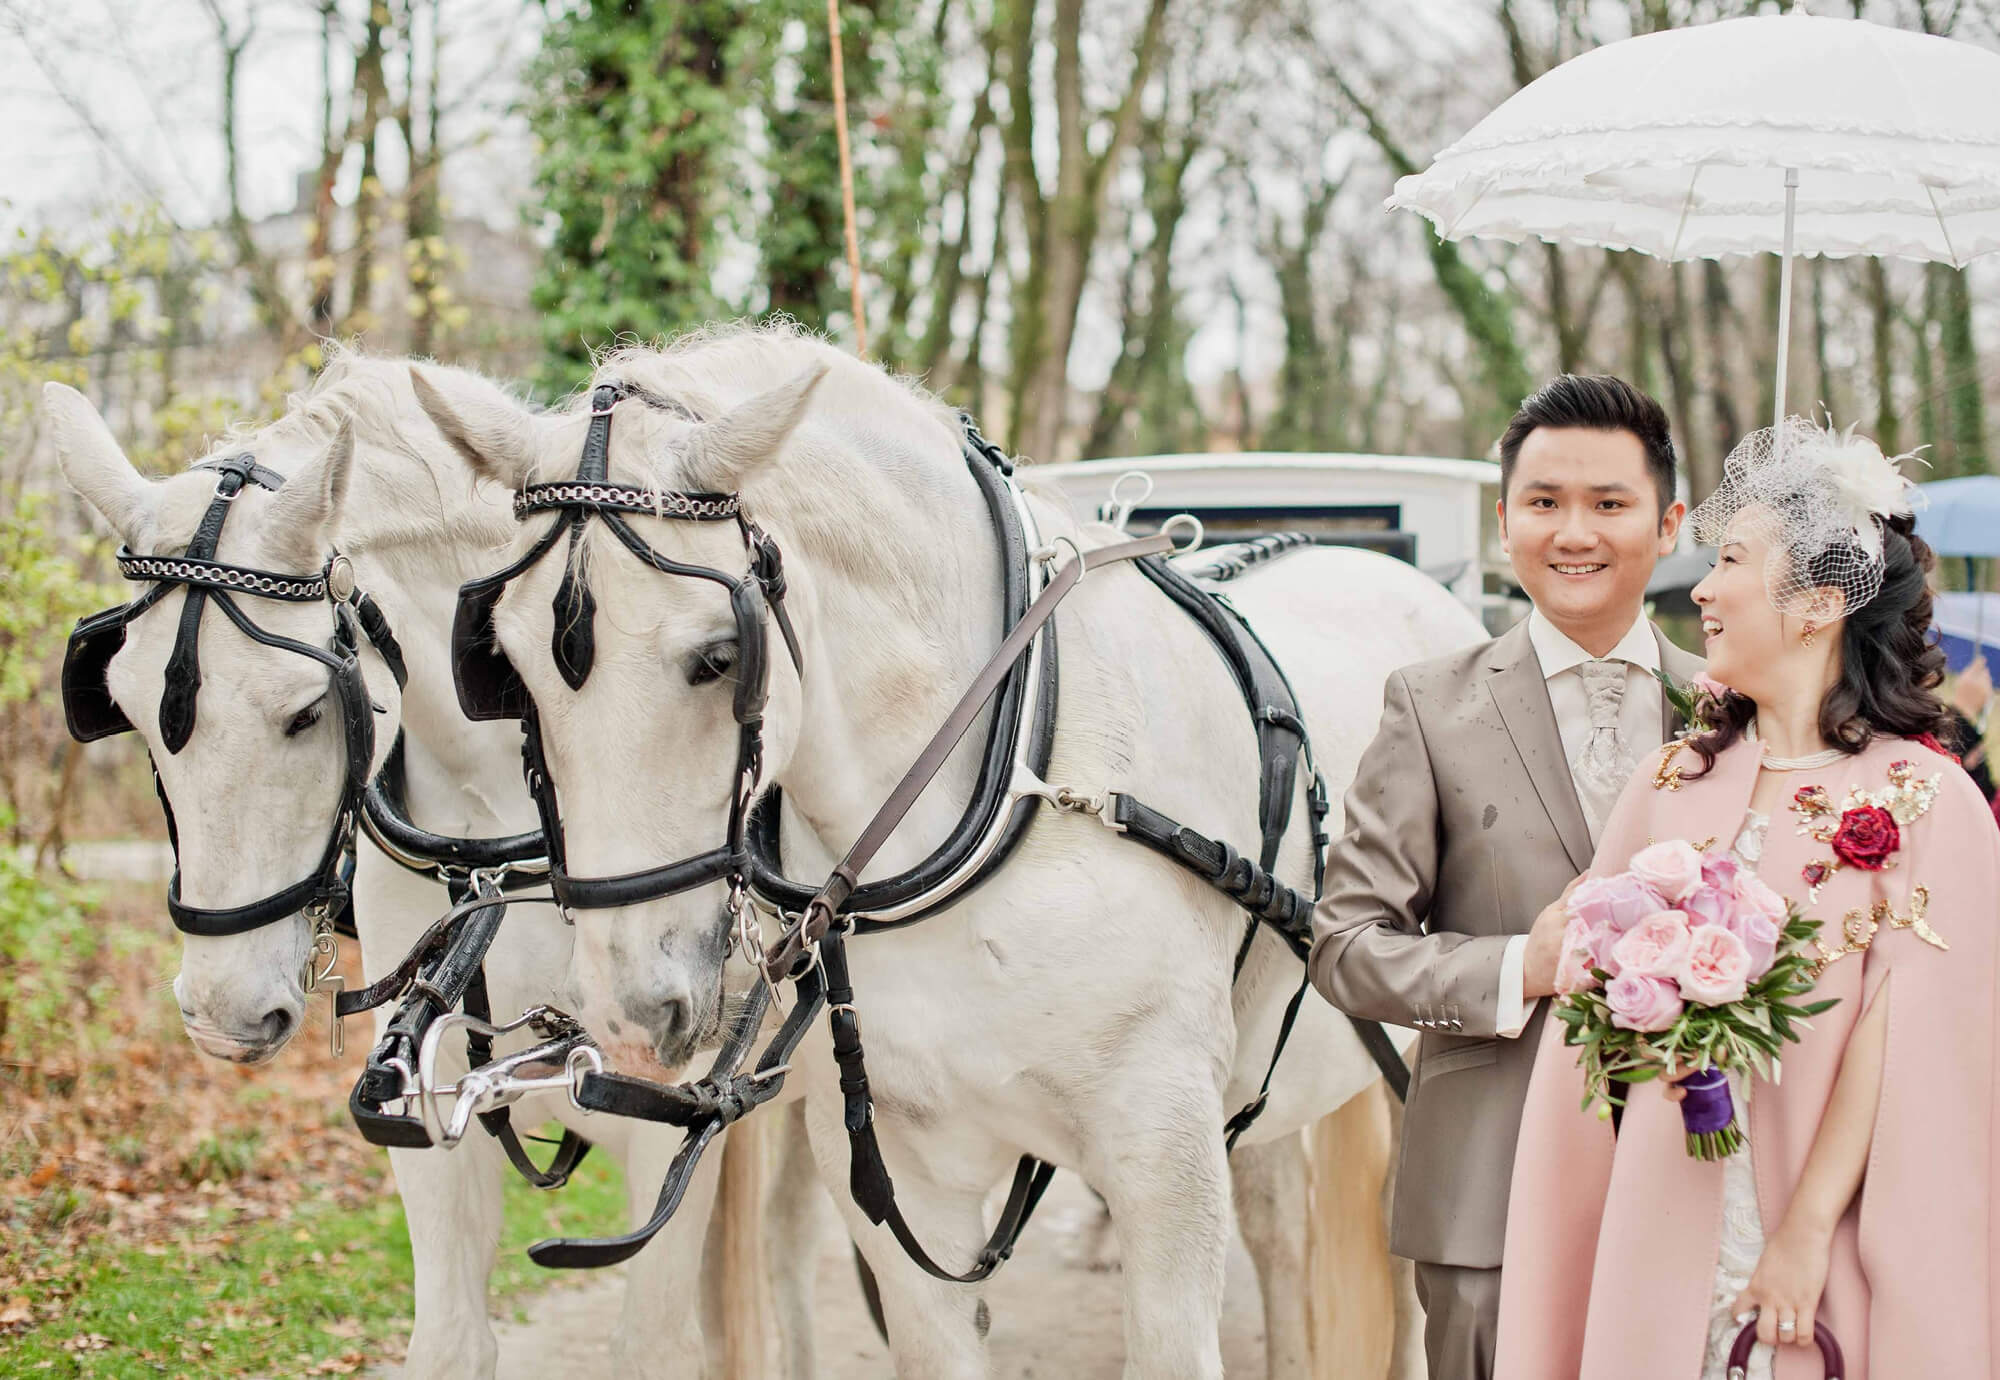 chinesische Hochzeit in München mit kutschfahrt im Englischen Garten